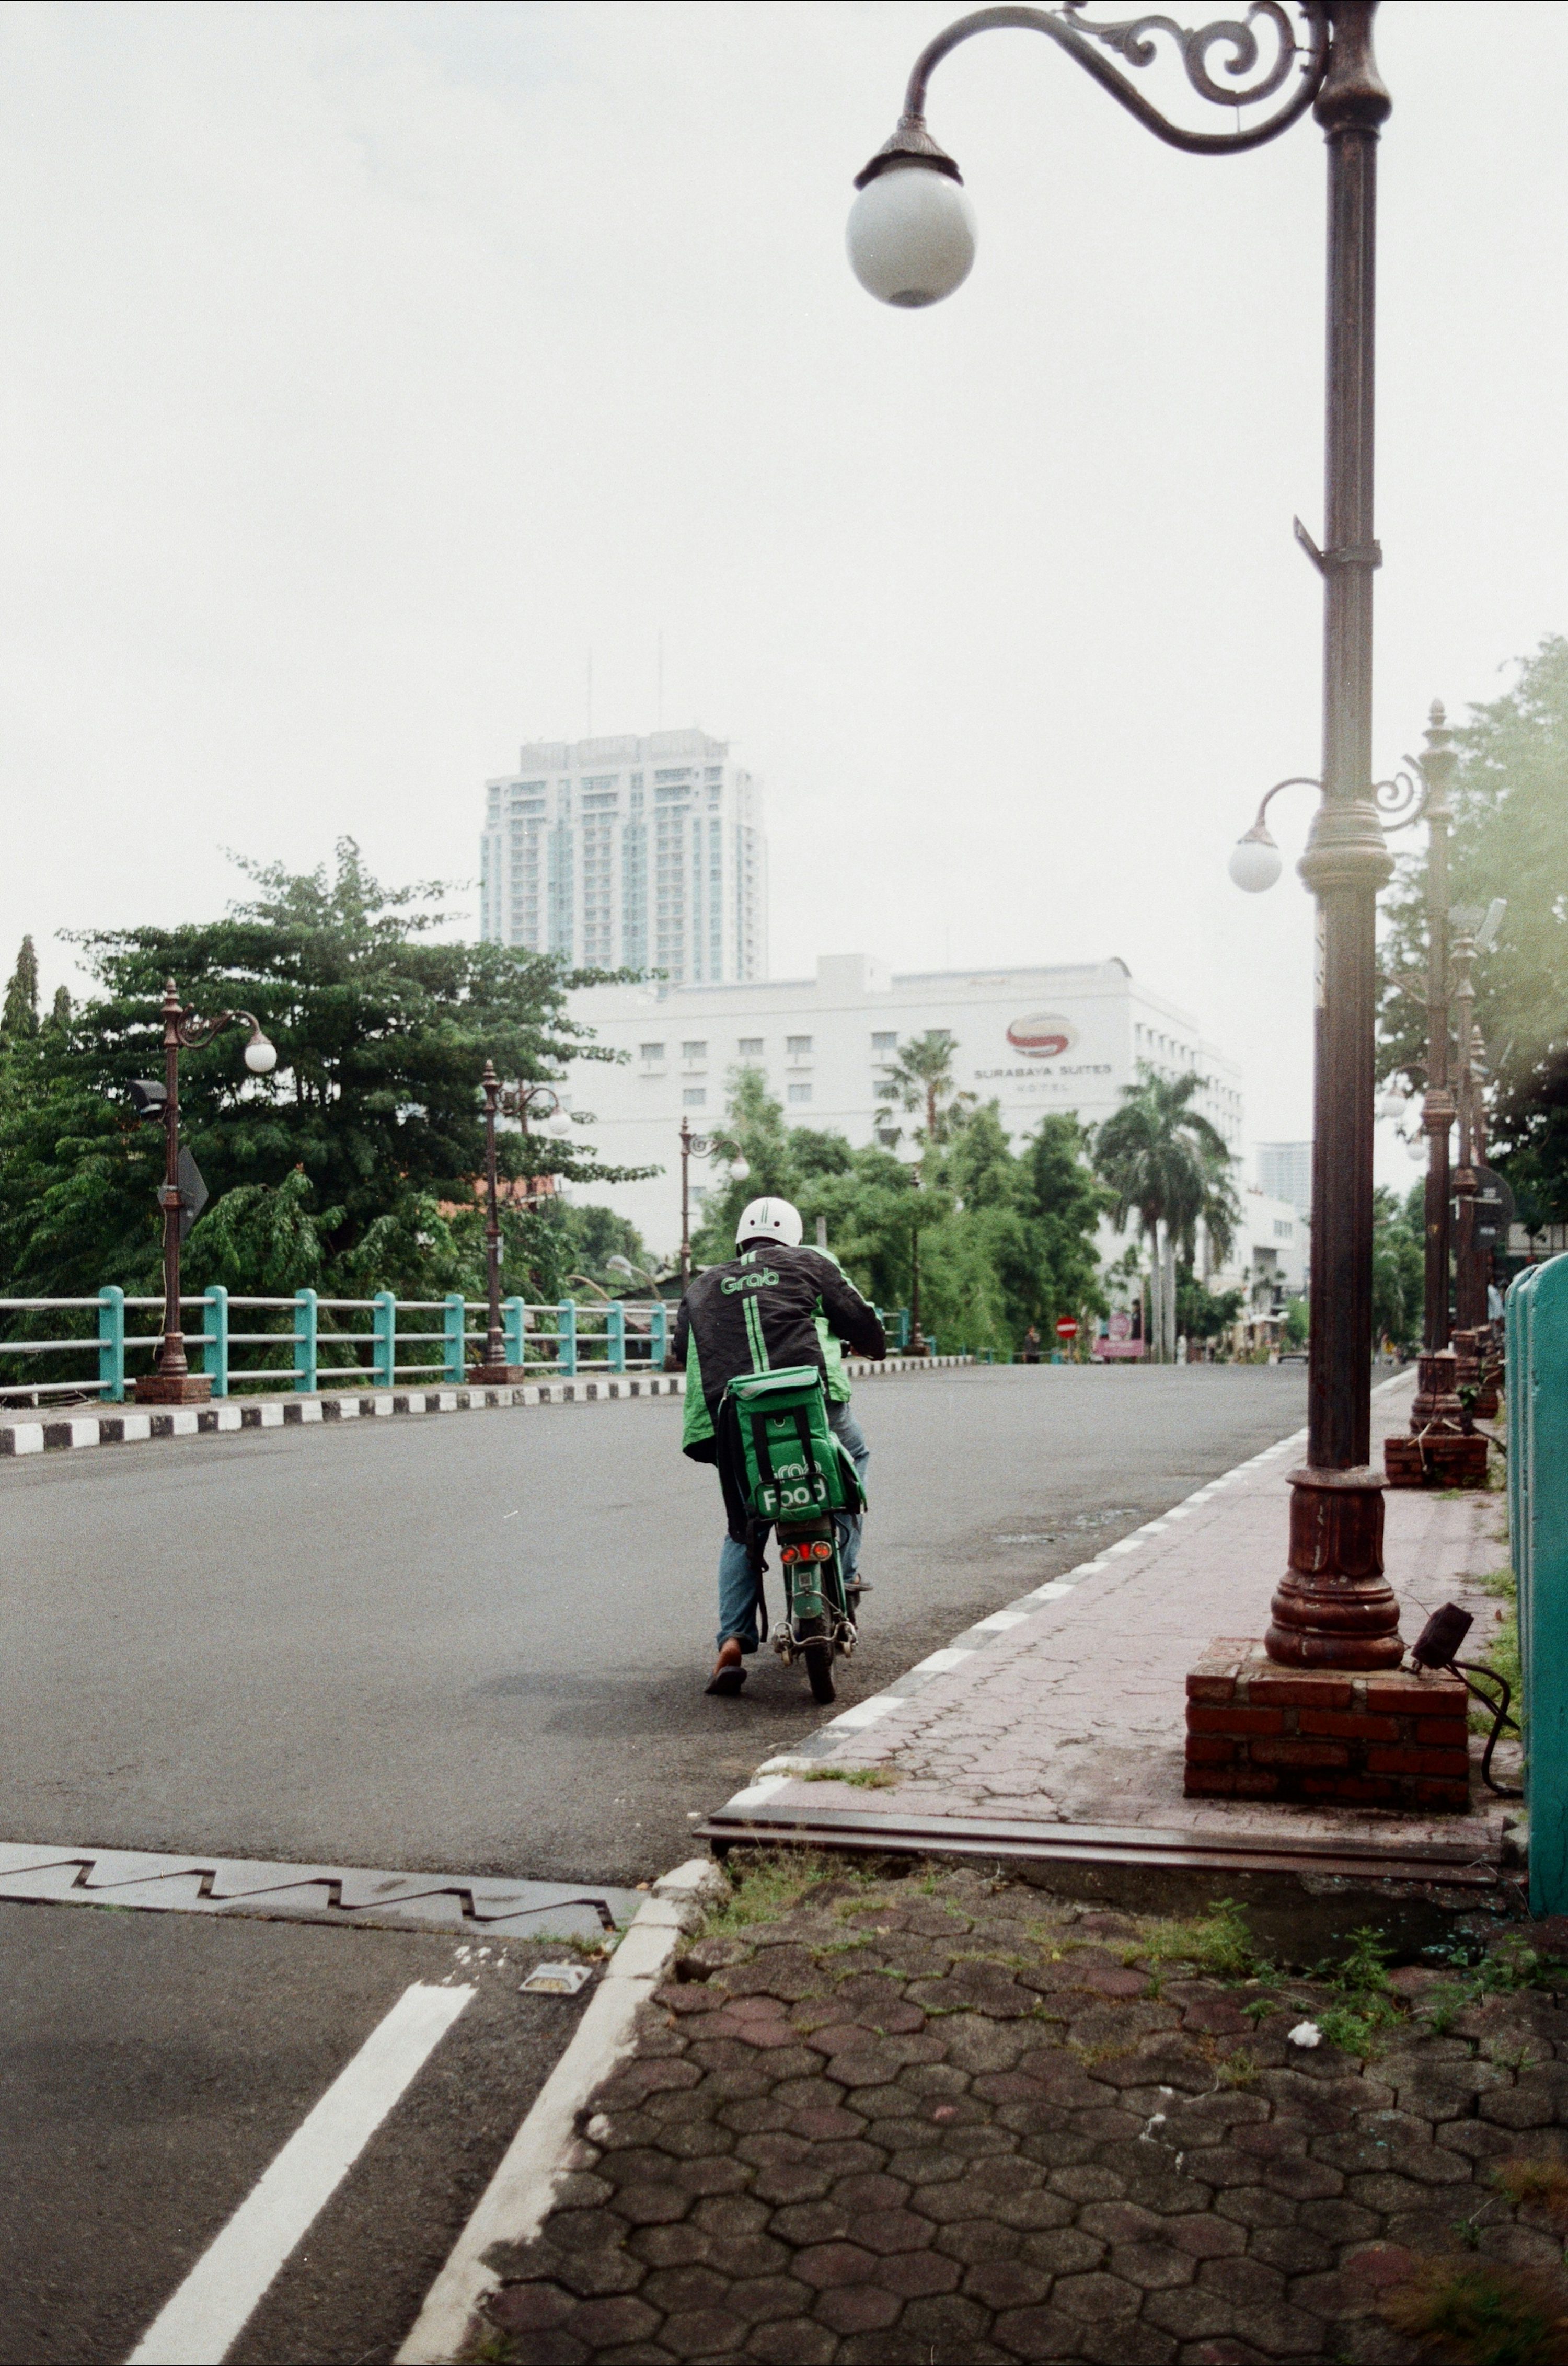 Un hombre conduciendo una motocicleta por una calle junto a un poste de luz